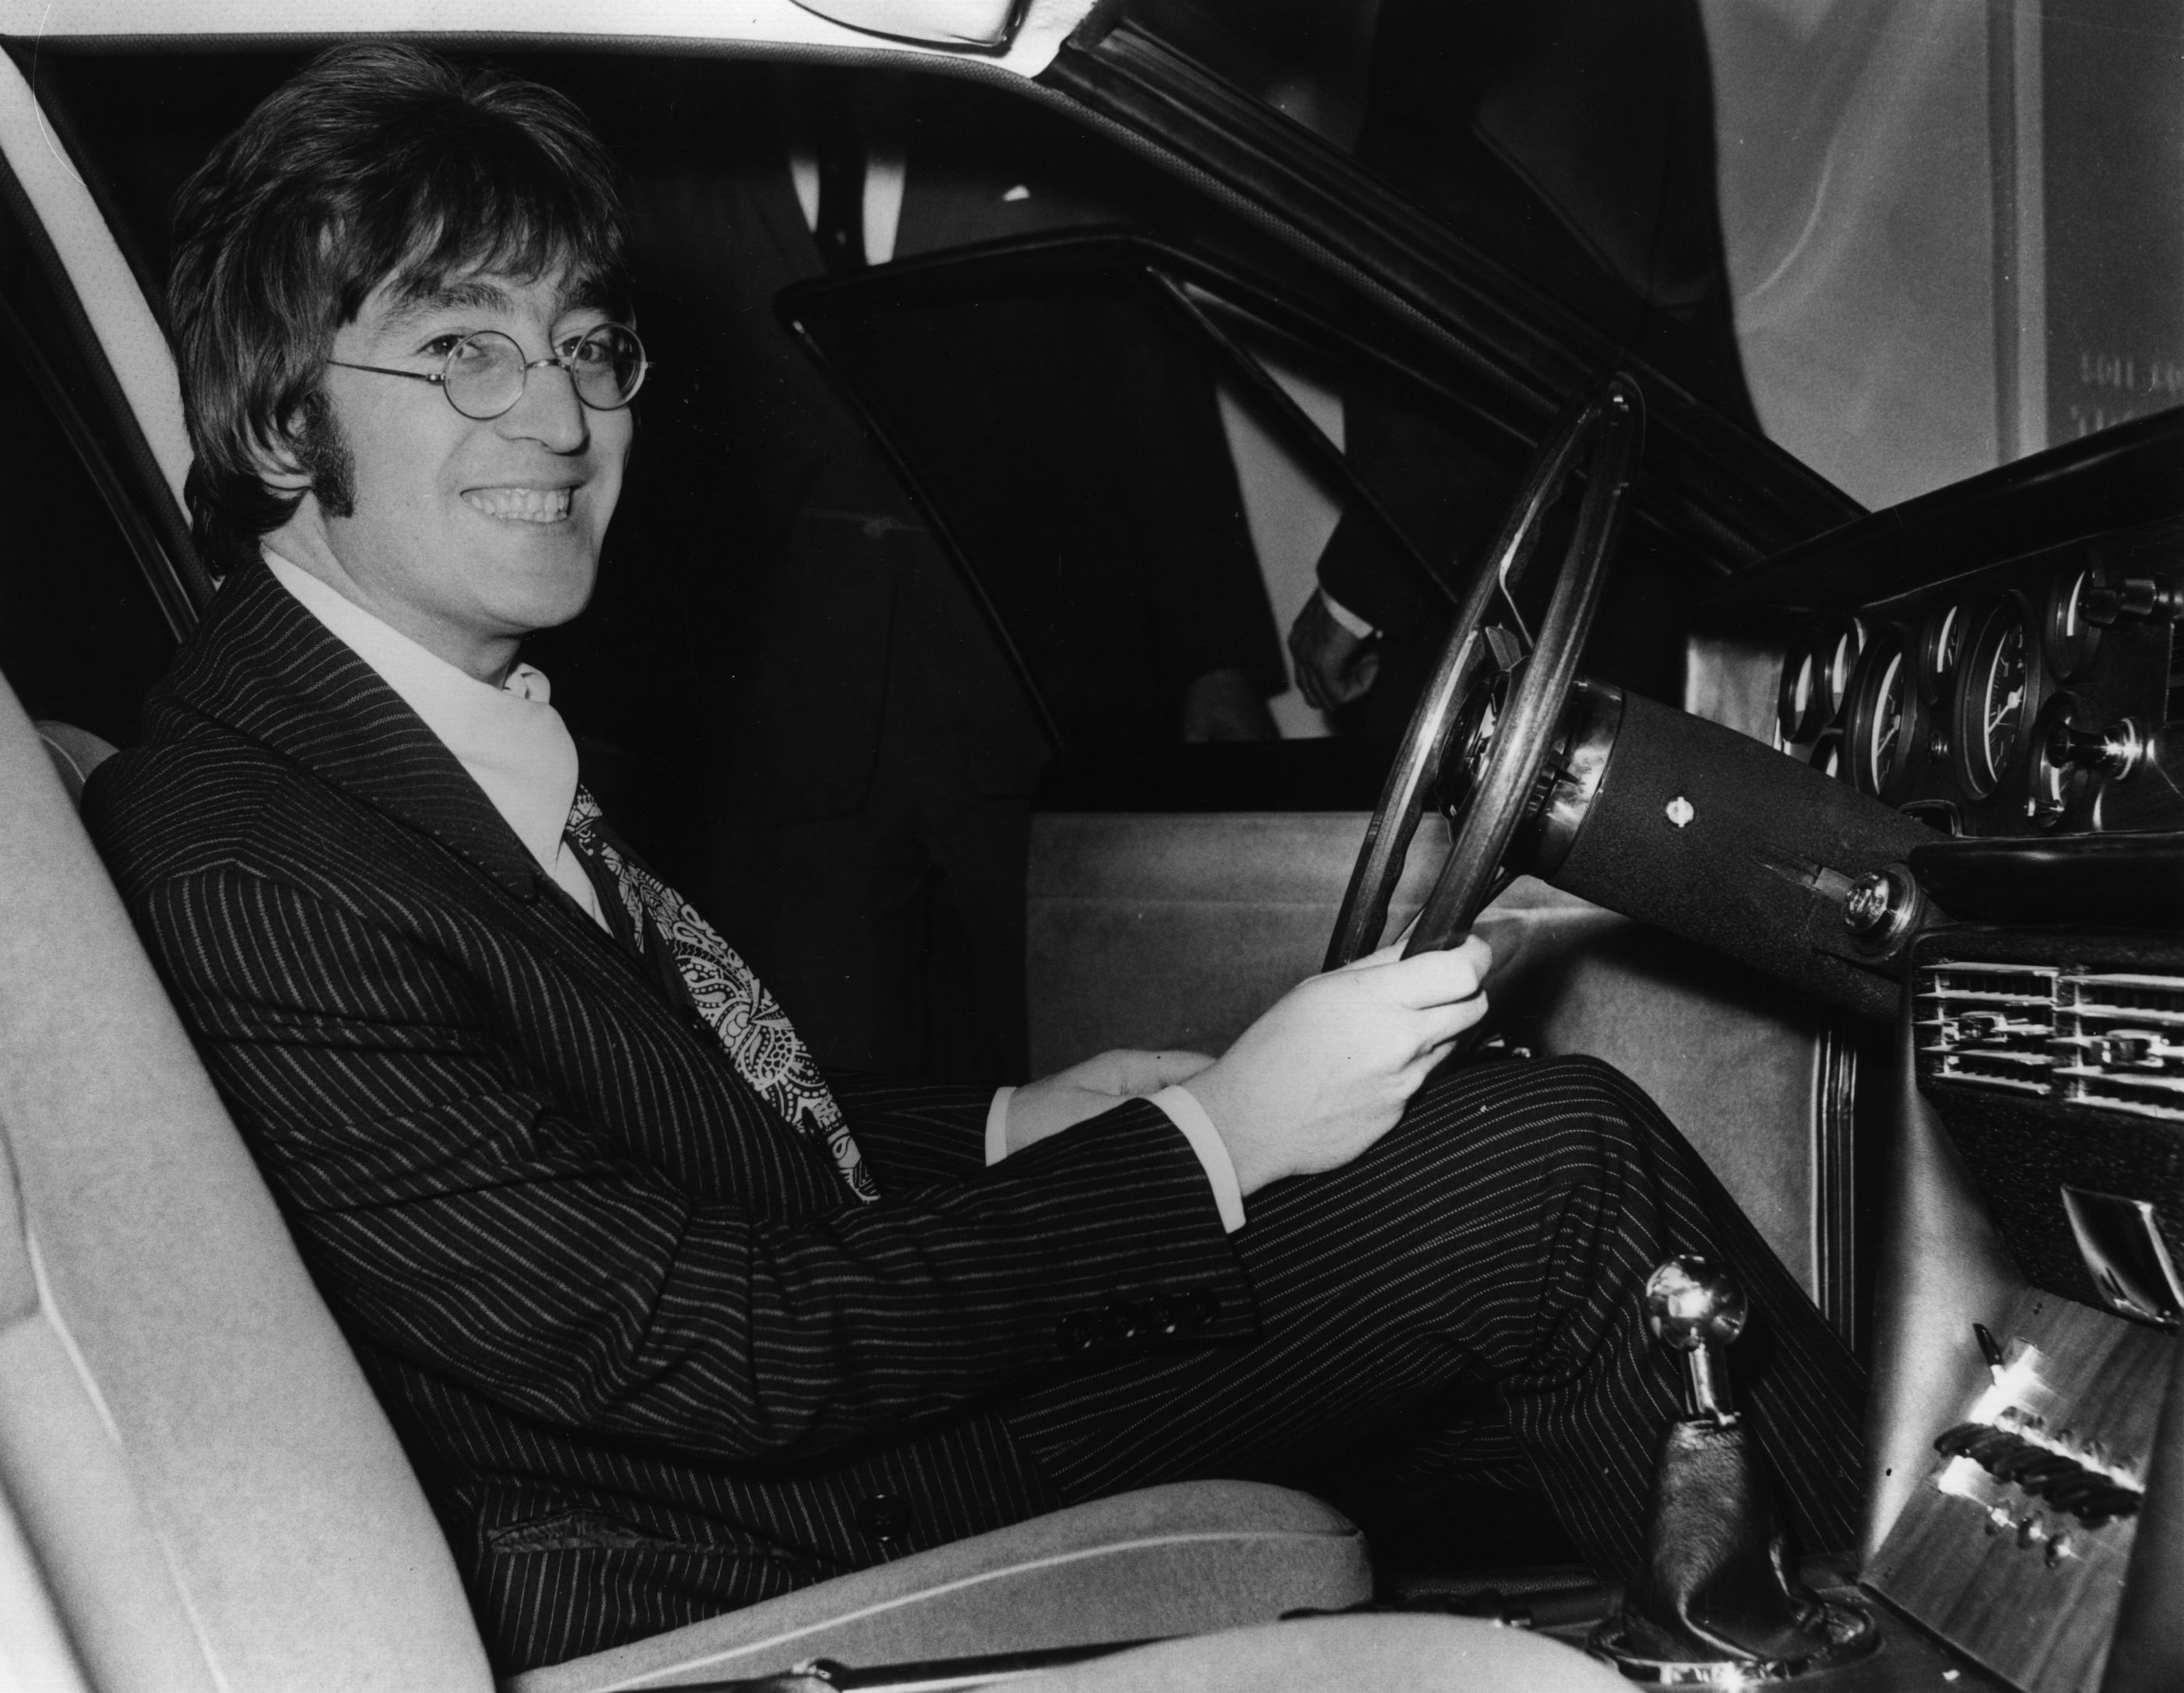 John Lennon in a car